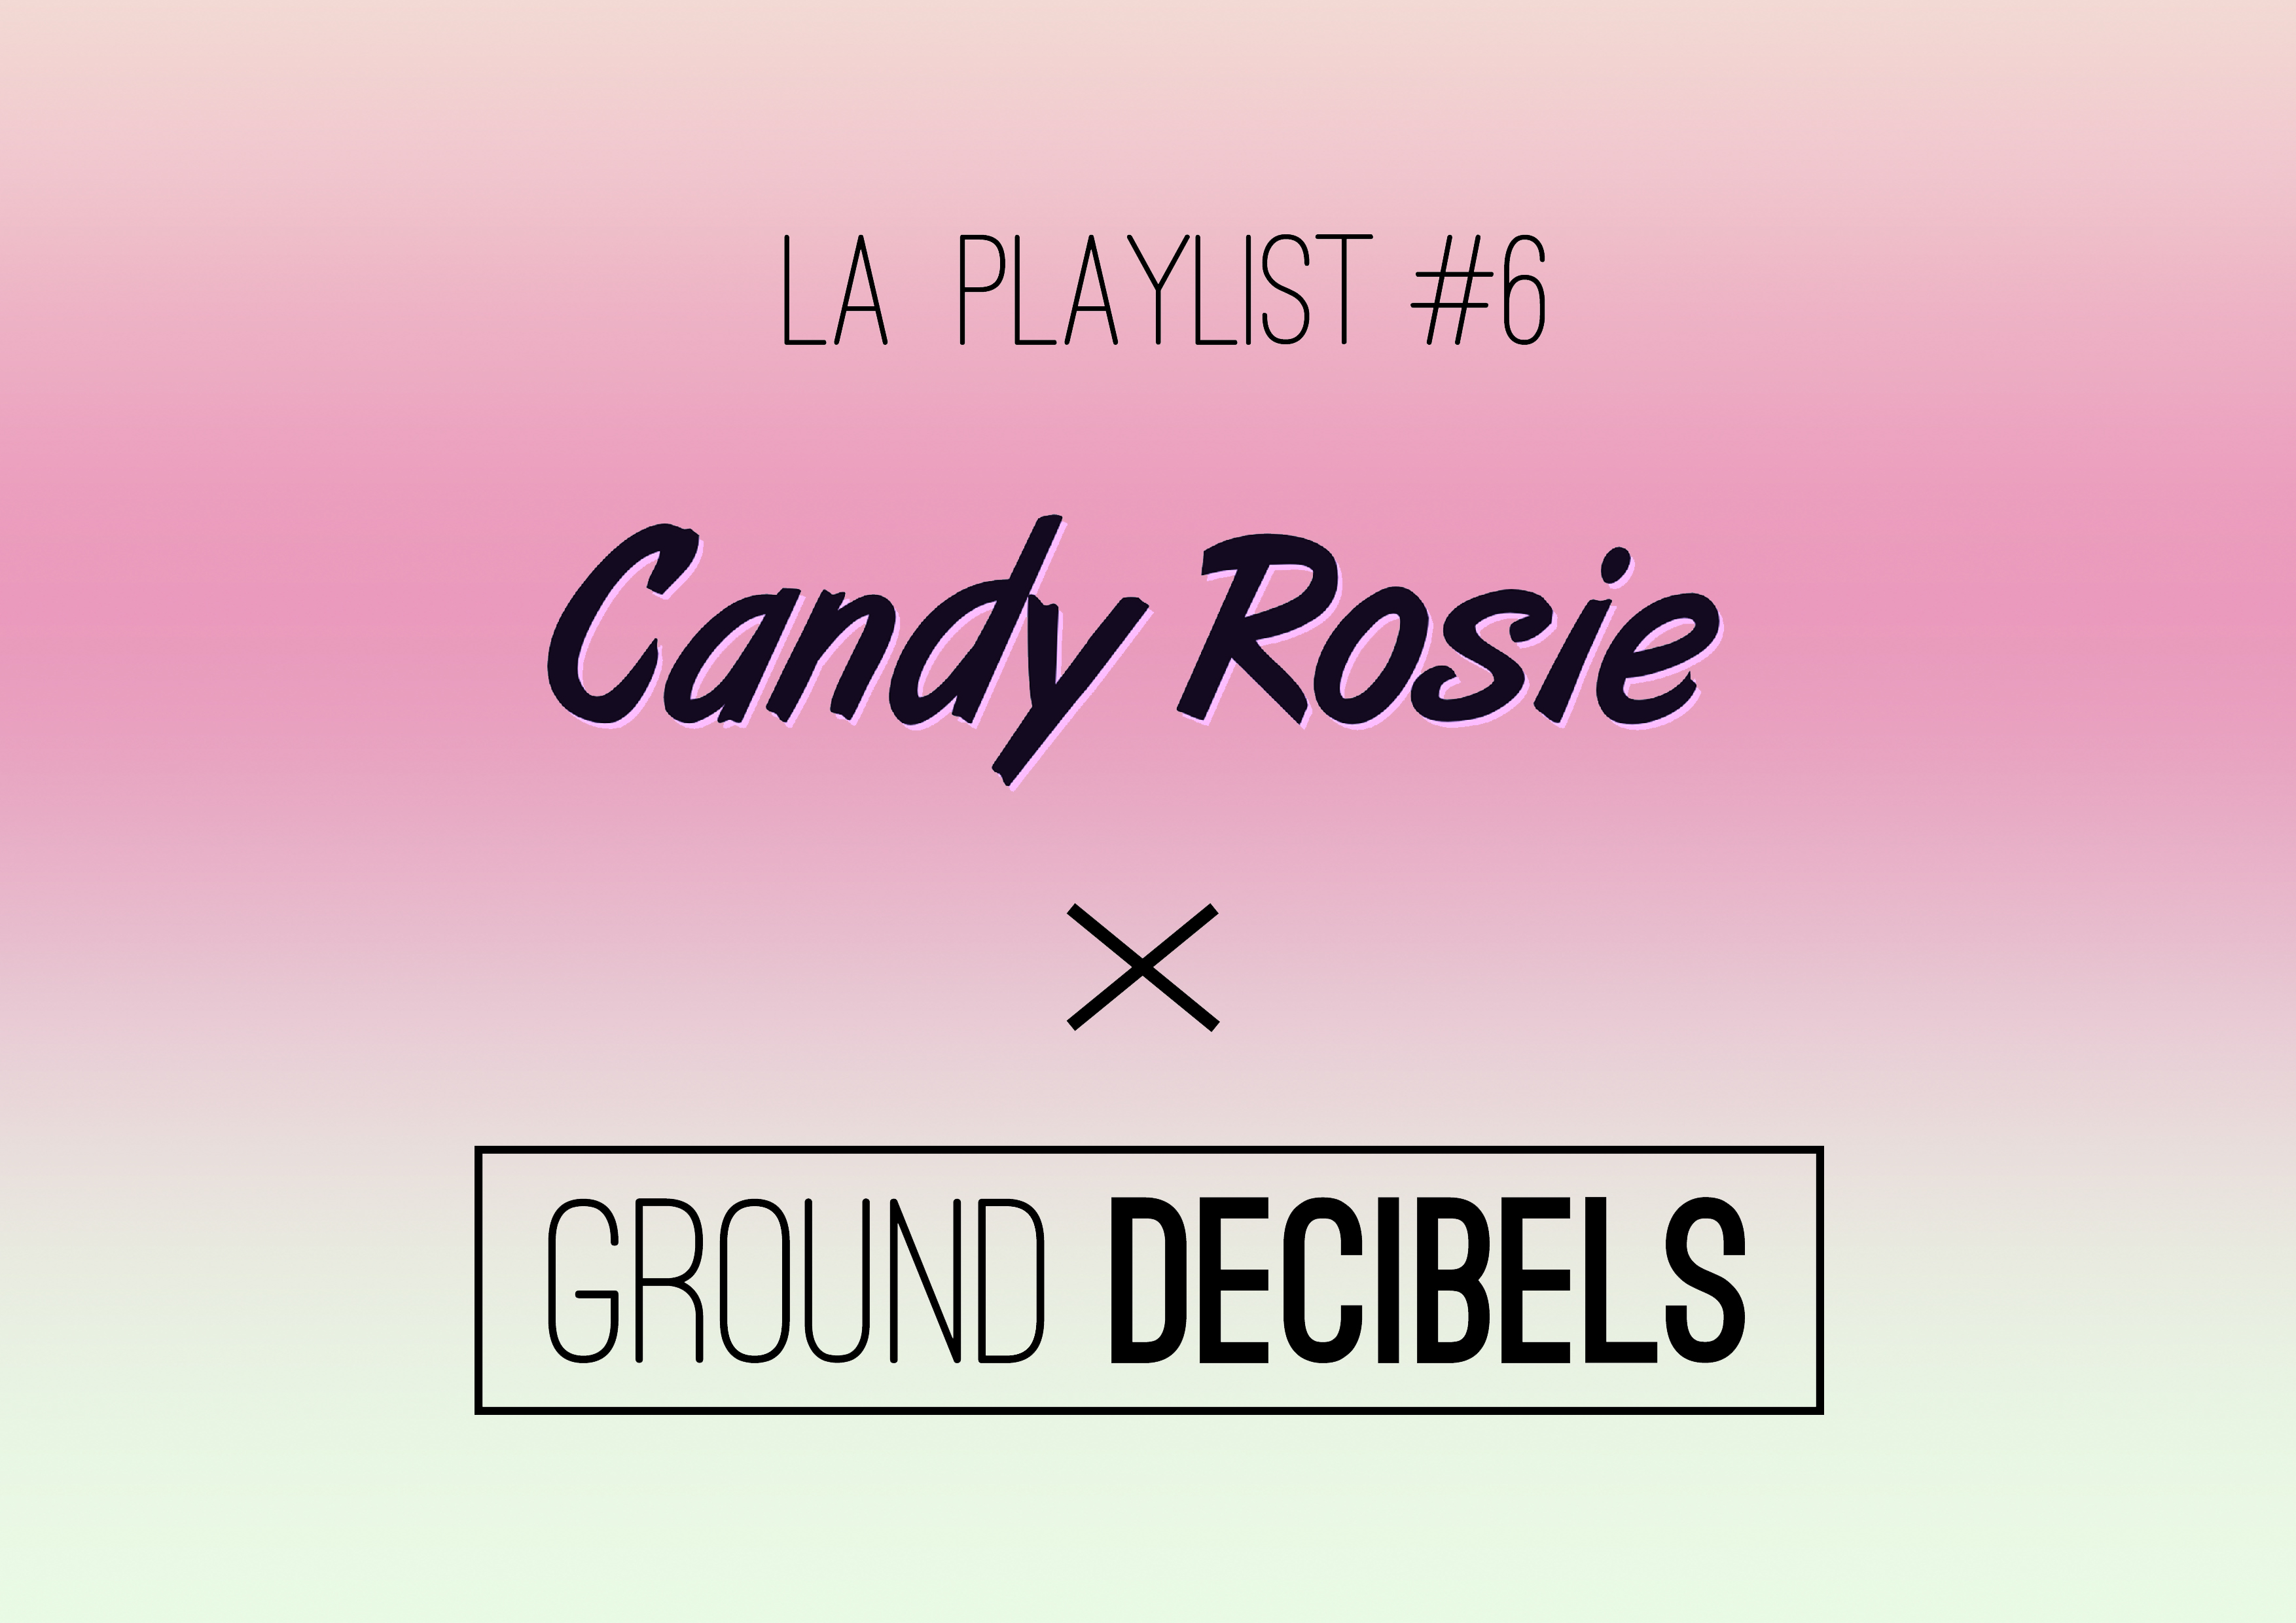 La playlist 6 - Candy Rosie x Ground Decibels